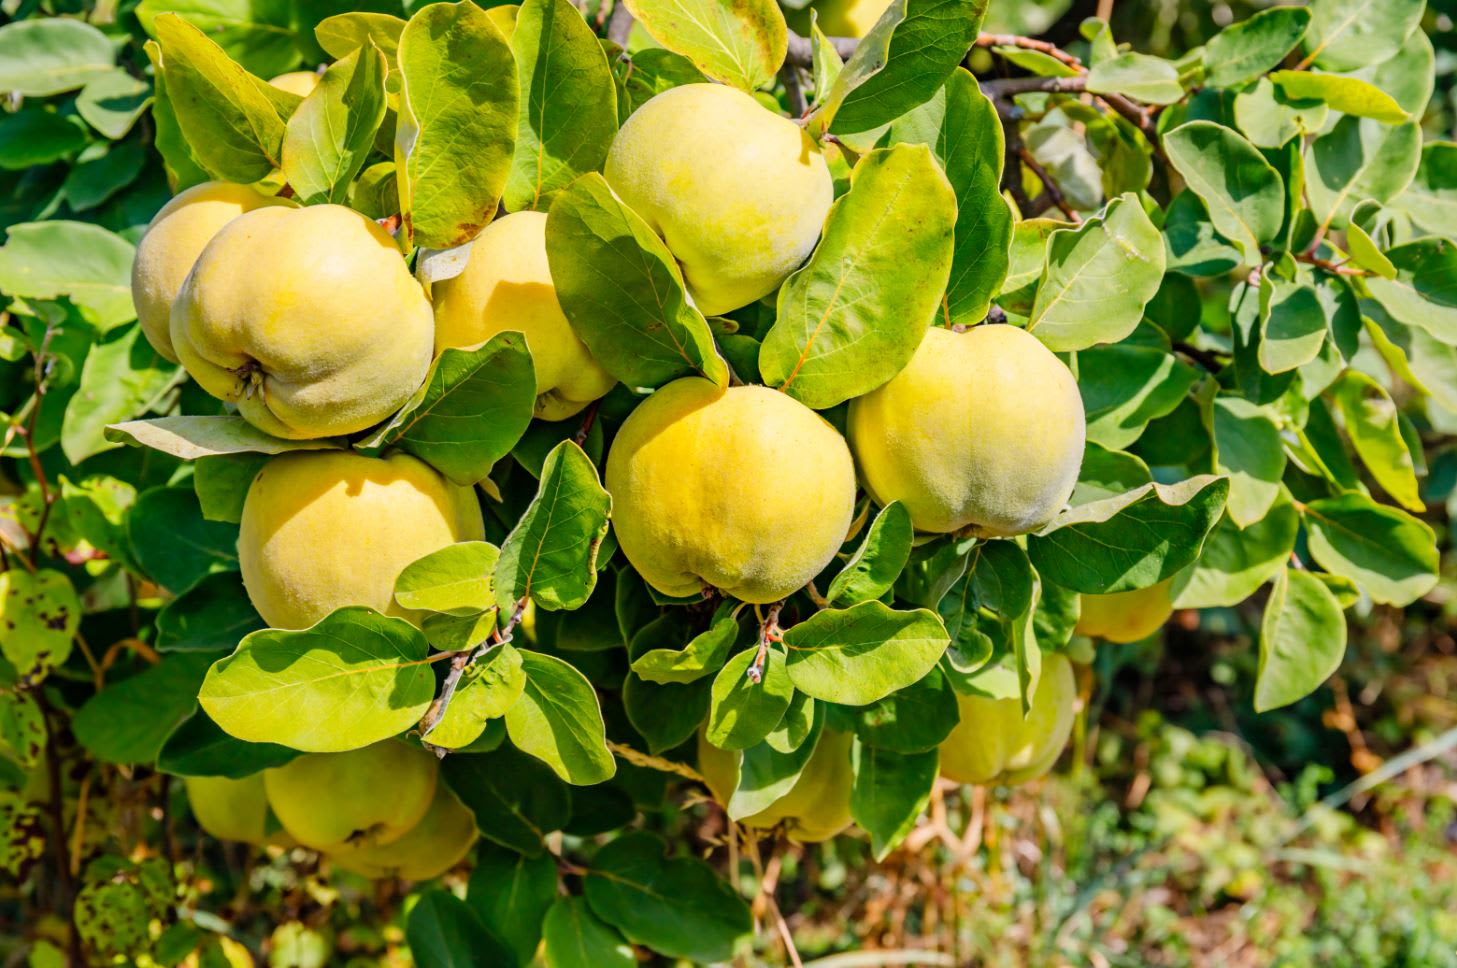 الفاكهة المحرمة التي تسببت بطرد آدم وحواء.. هل كانت تفاحةً حقاً؟